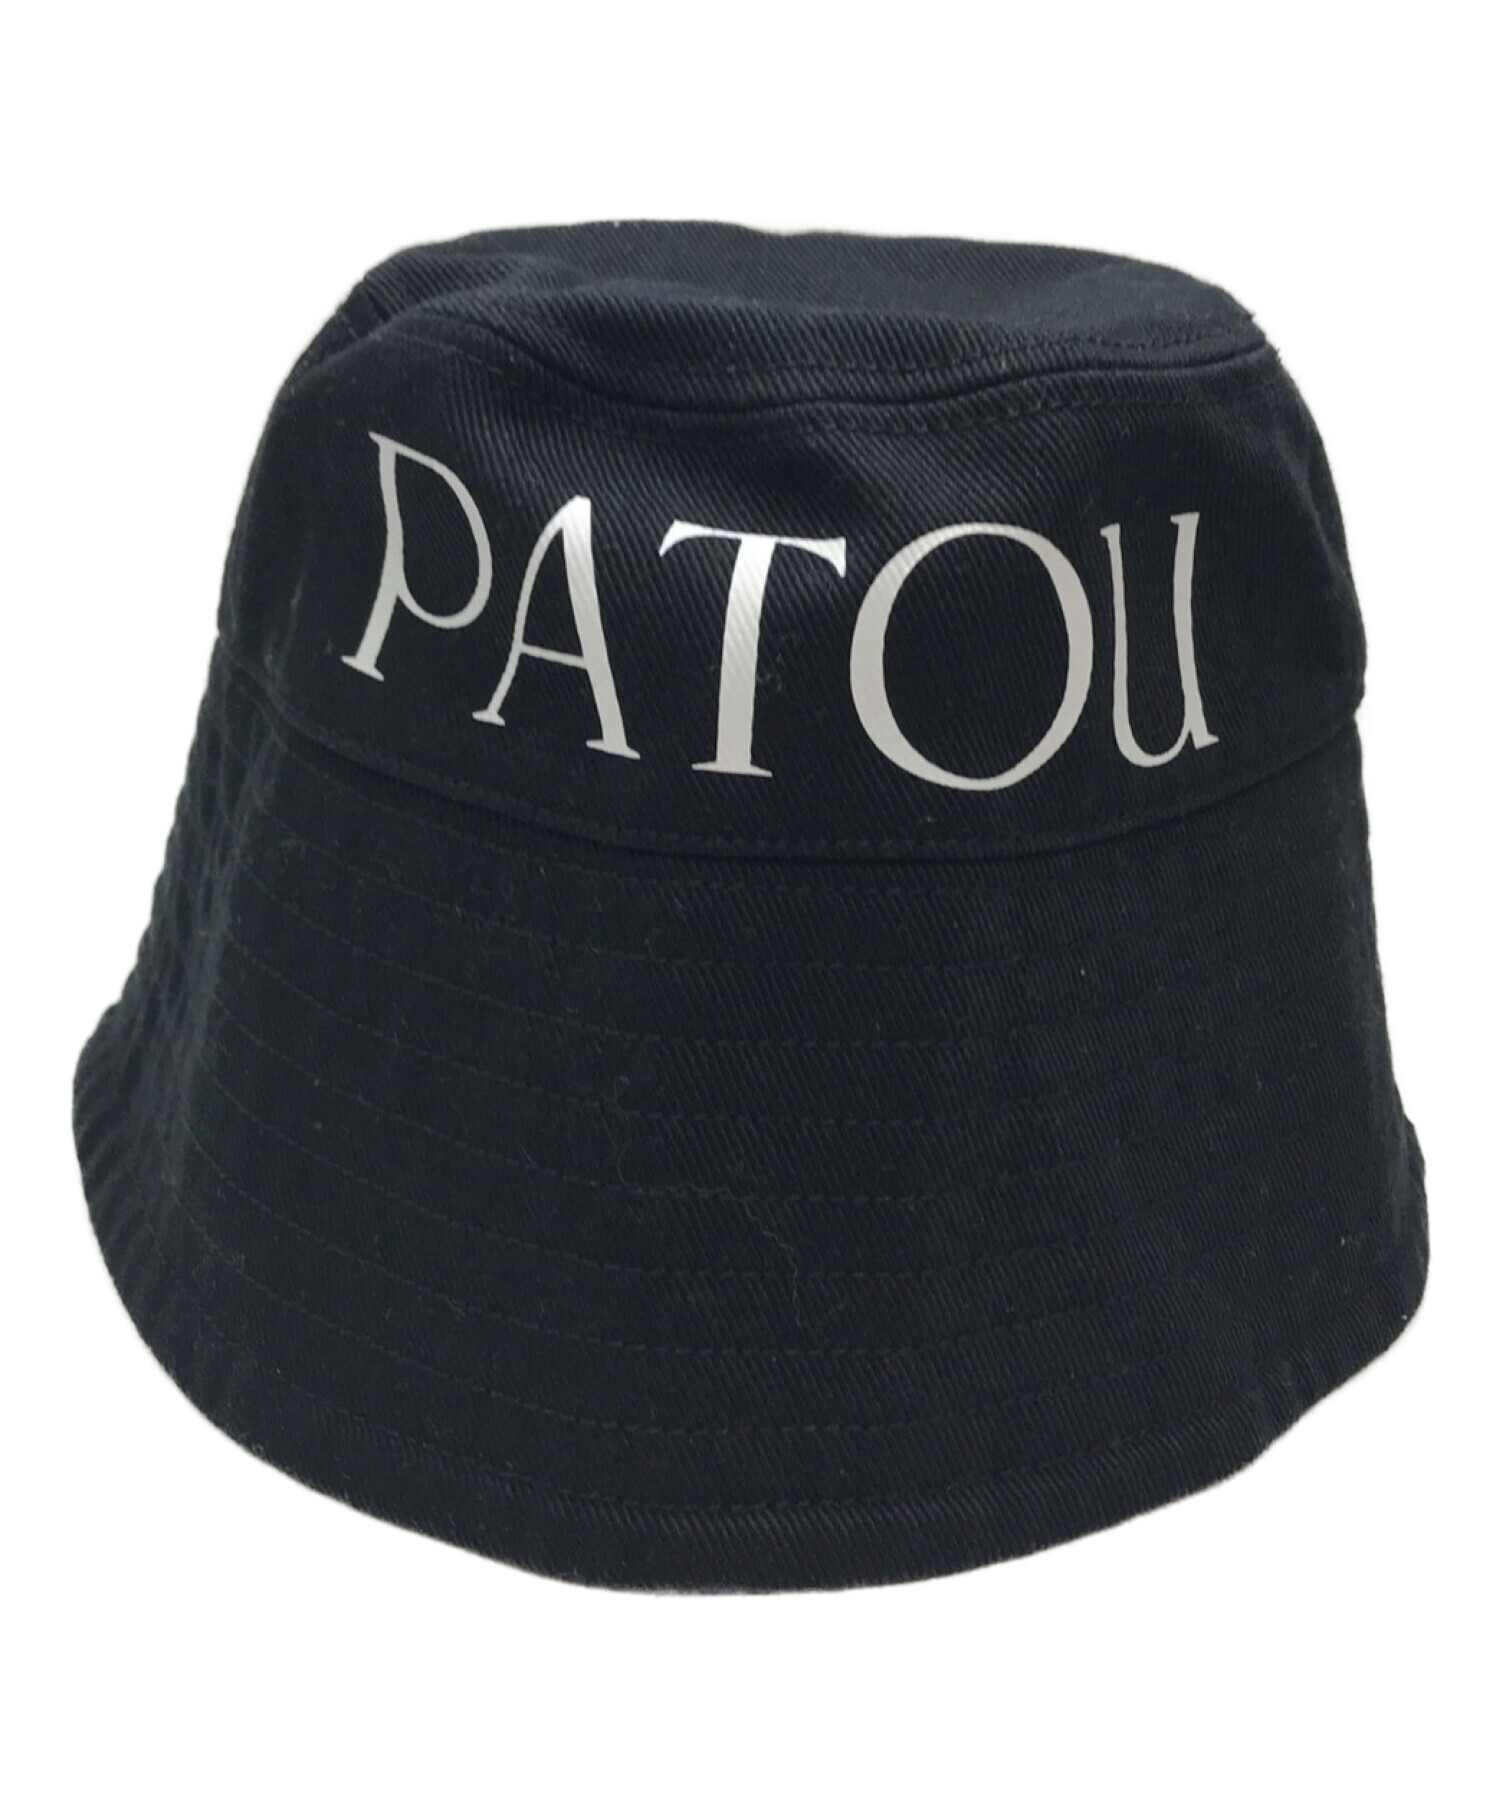 patou (パトゥ) バケットハット ブラック サイズ:SIZE XS-S